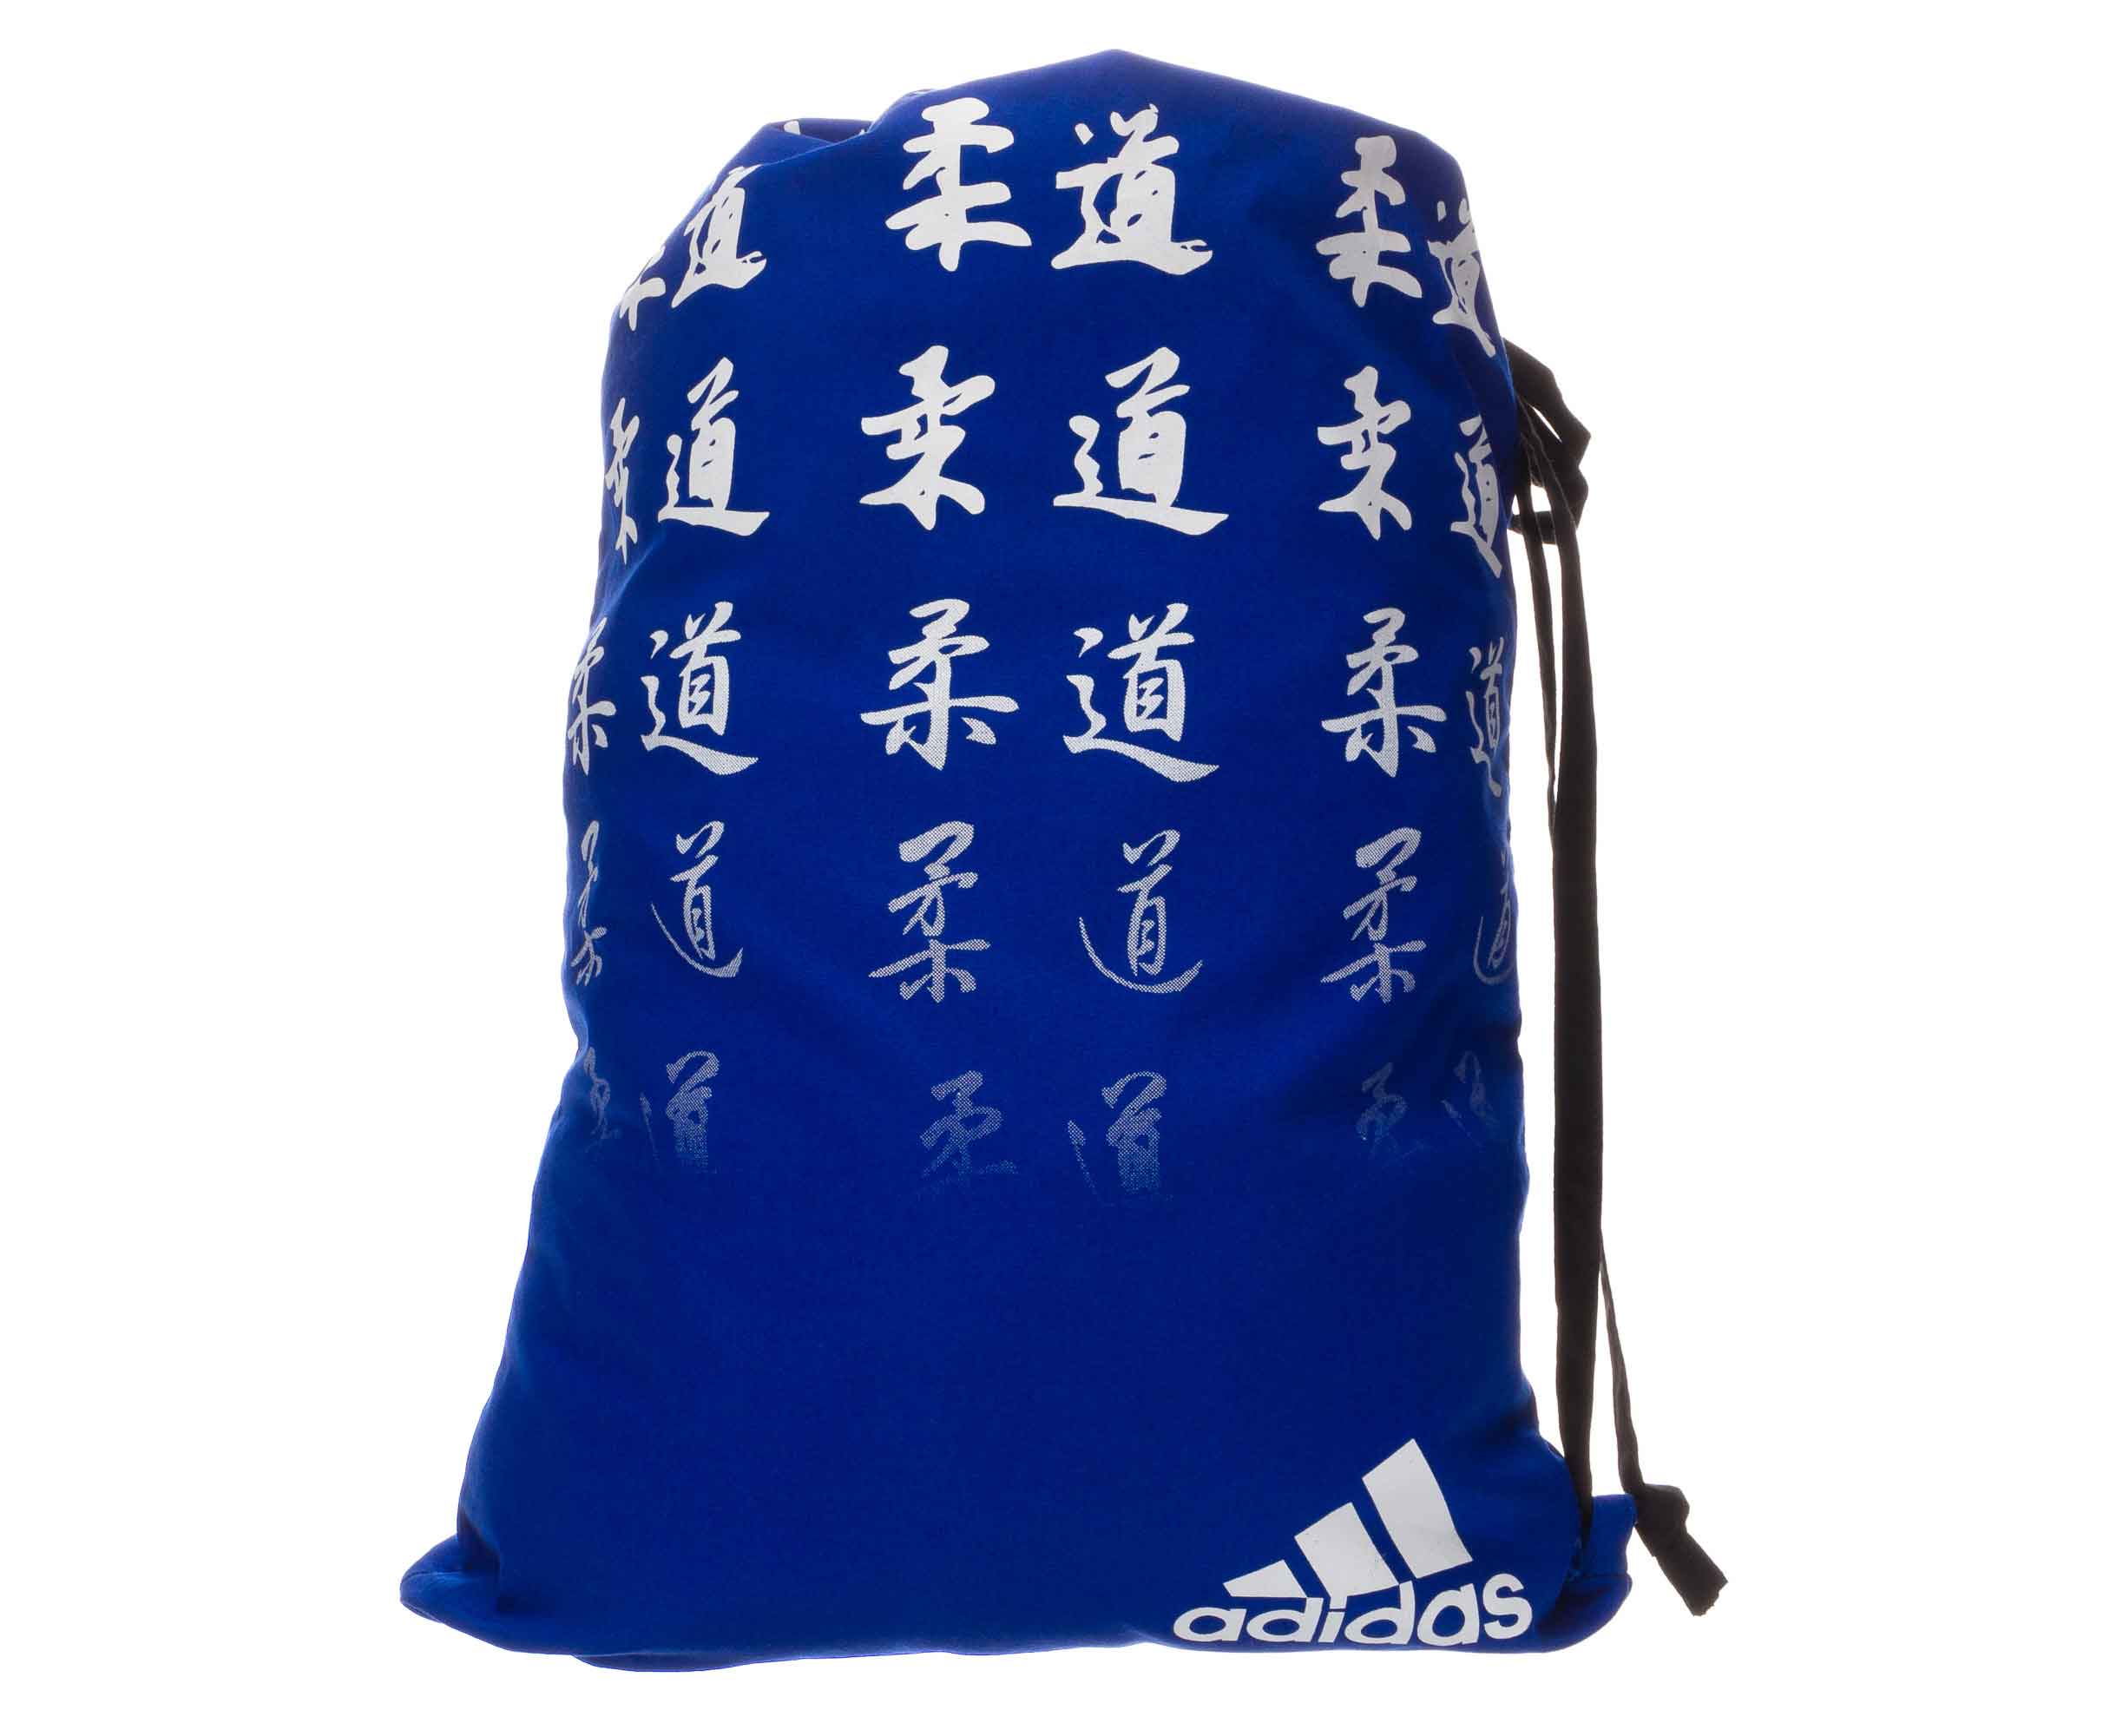 Спортивная сумка Adidas Satin Carry Bag Judo синяя/белая